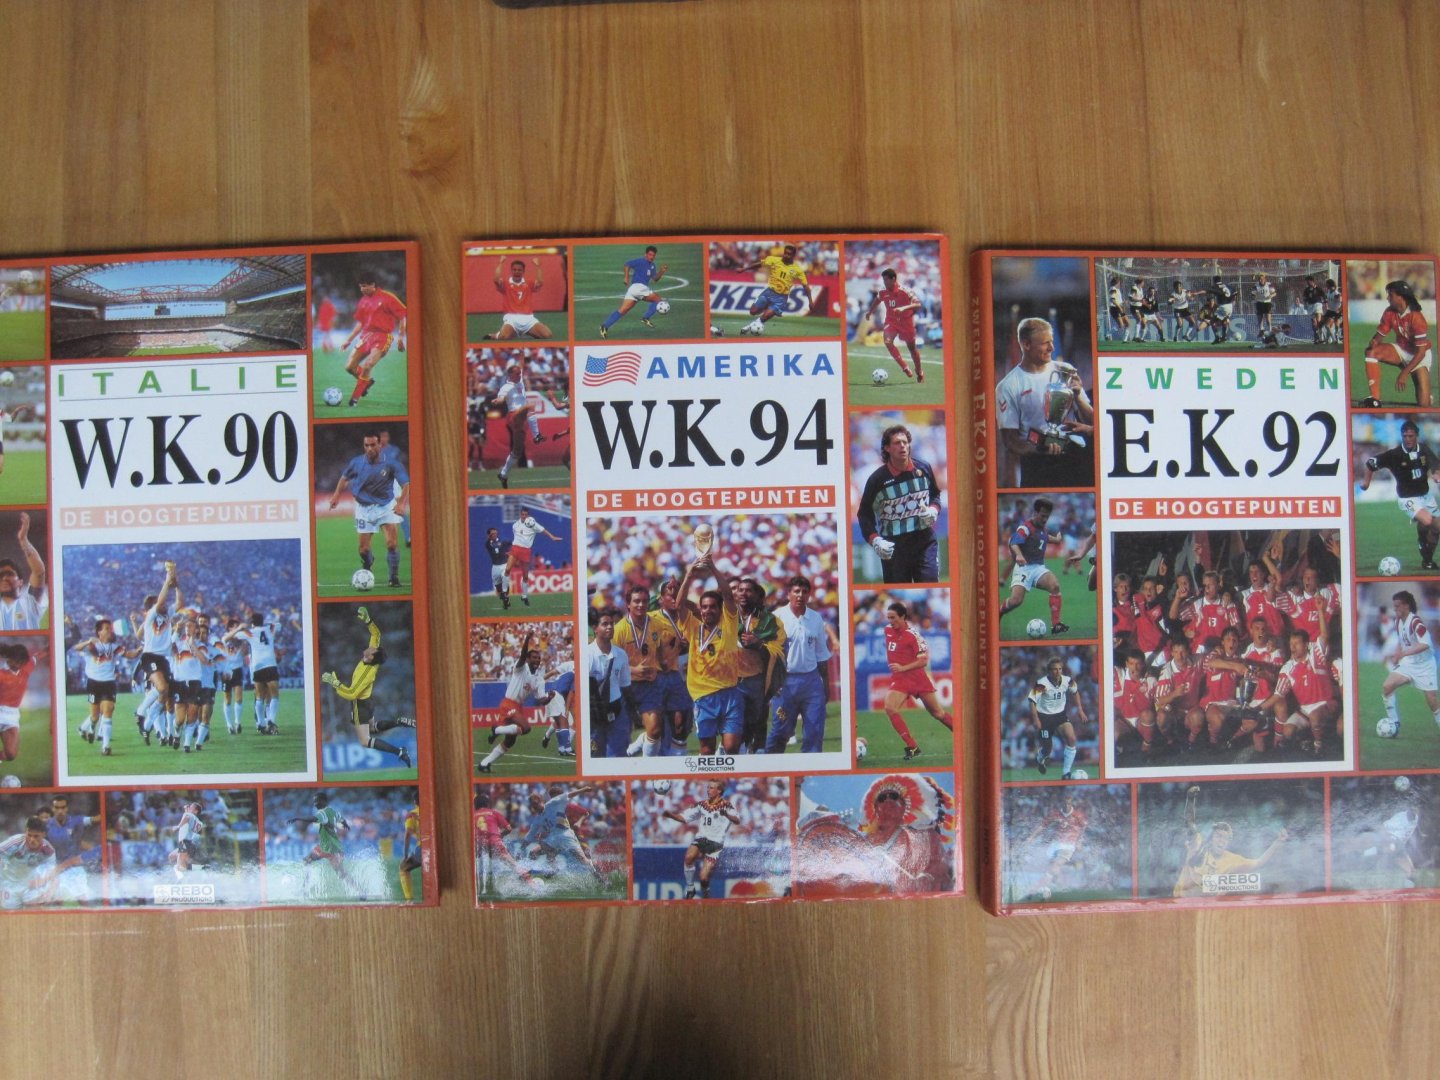 Textcase - De Hoogtepunten WK 90 - EK 92 - WK 94 -De hoogtepunten